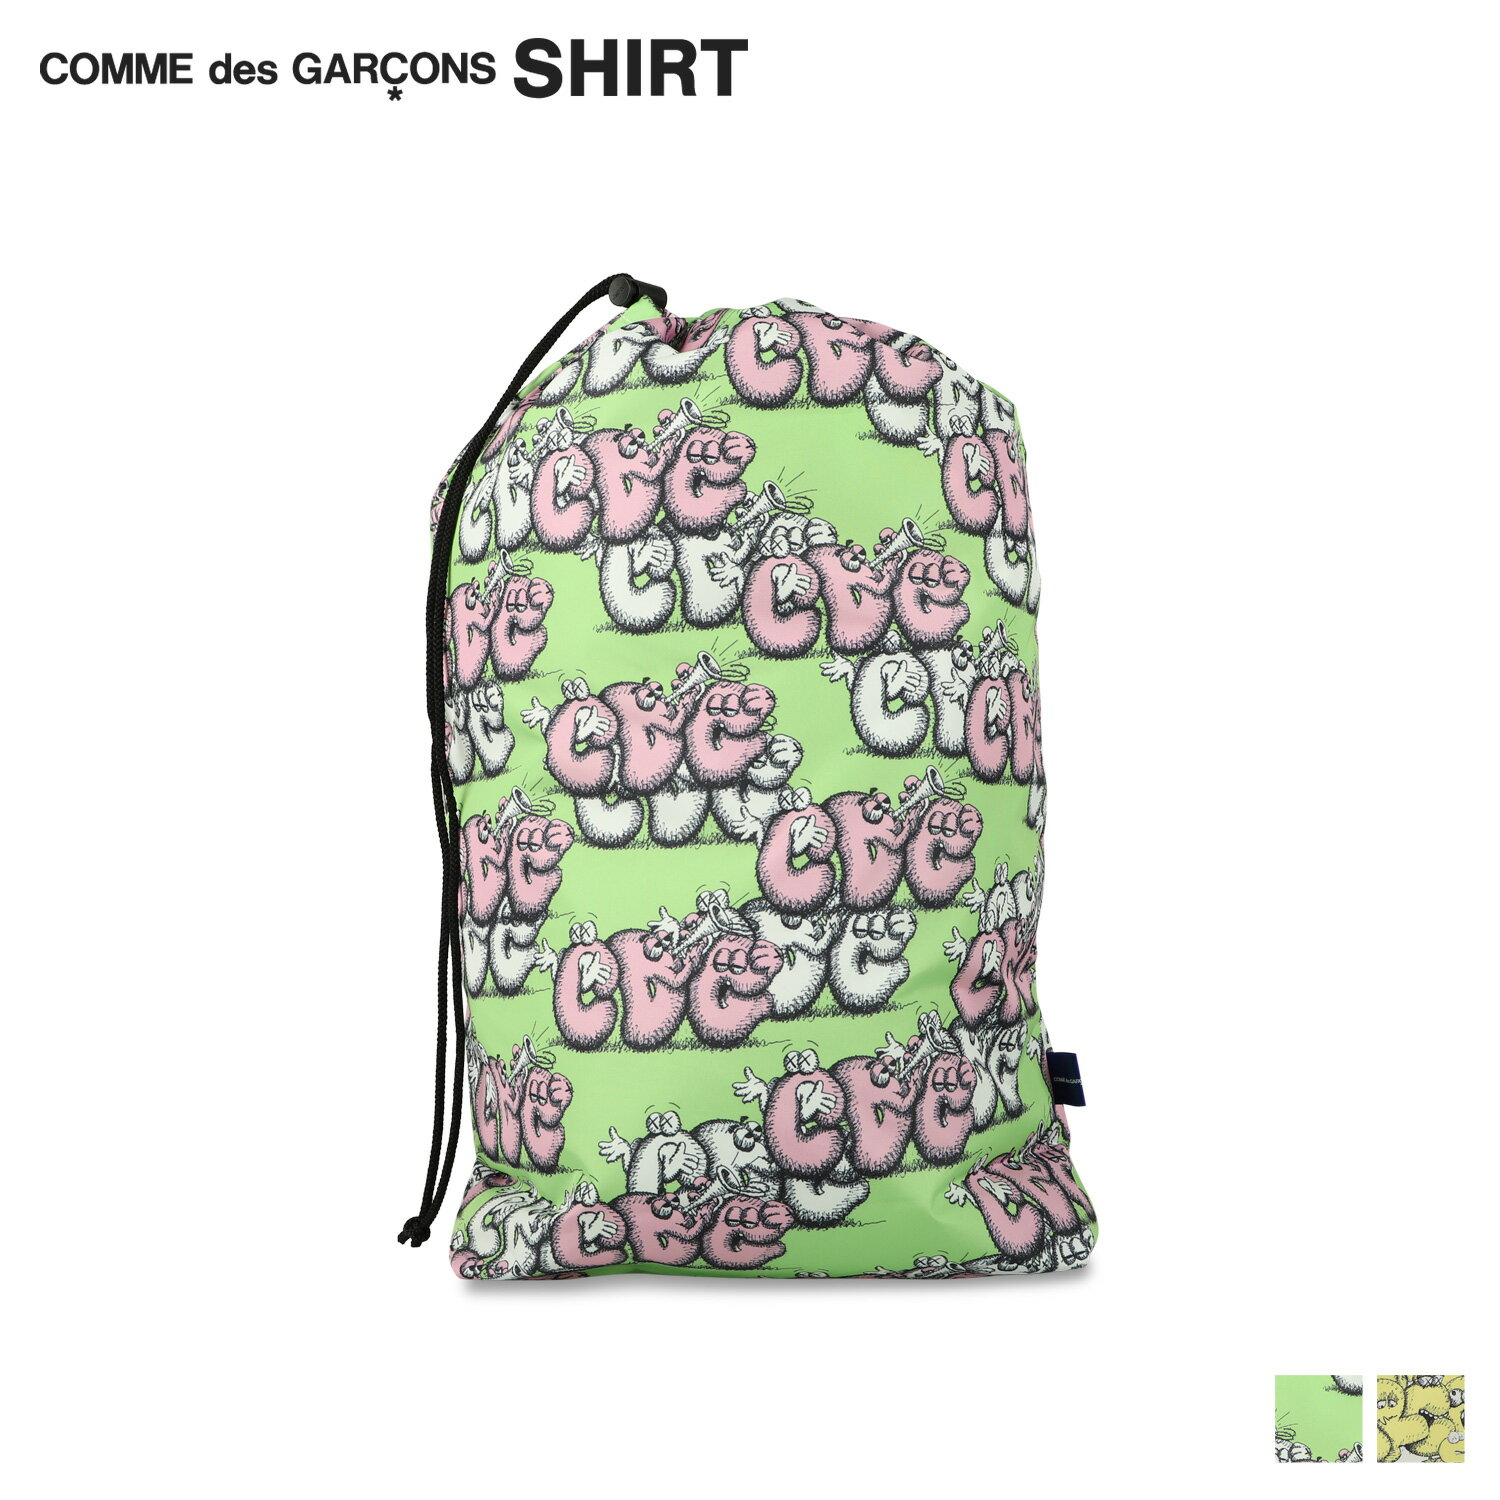 男女兼用バッグ, バックパック・リュック Comme des Garcons SHIRT KAWS BAG FH-K201